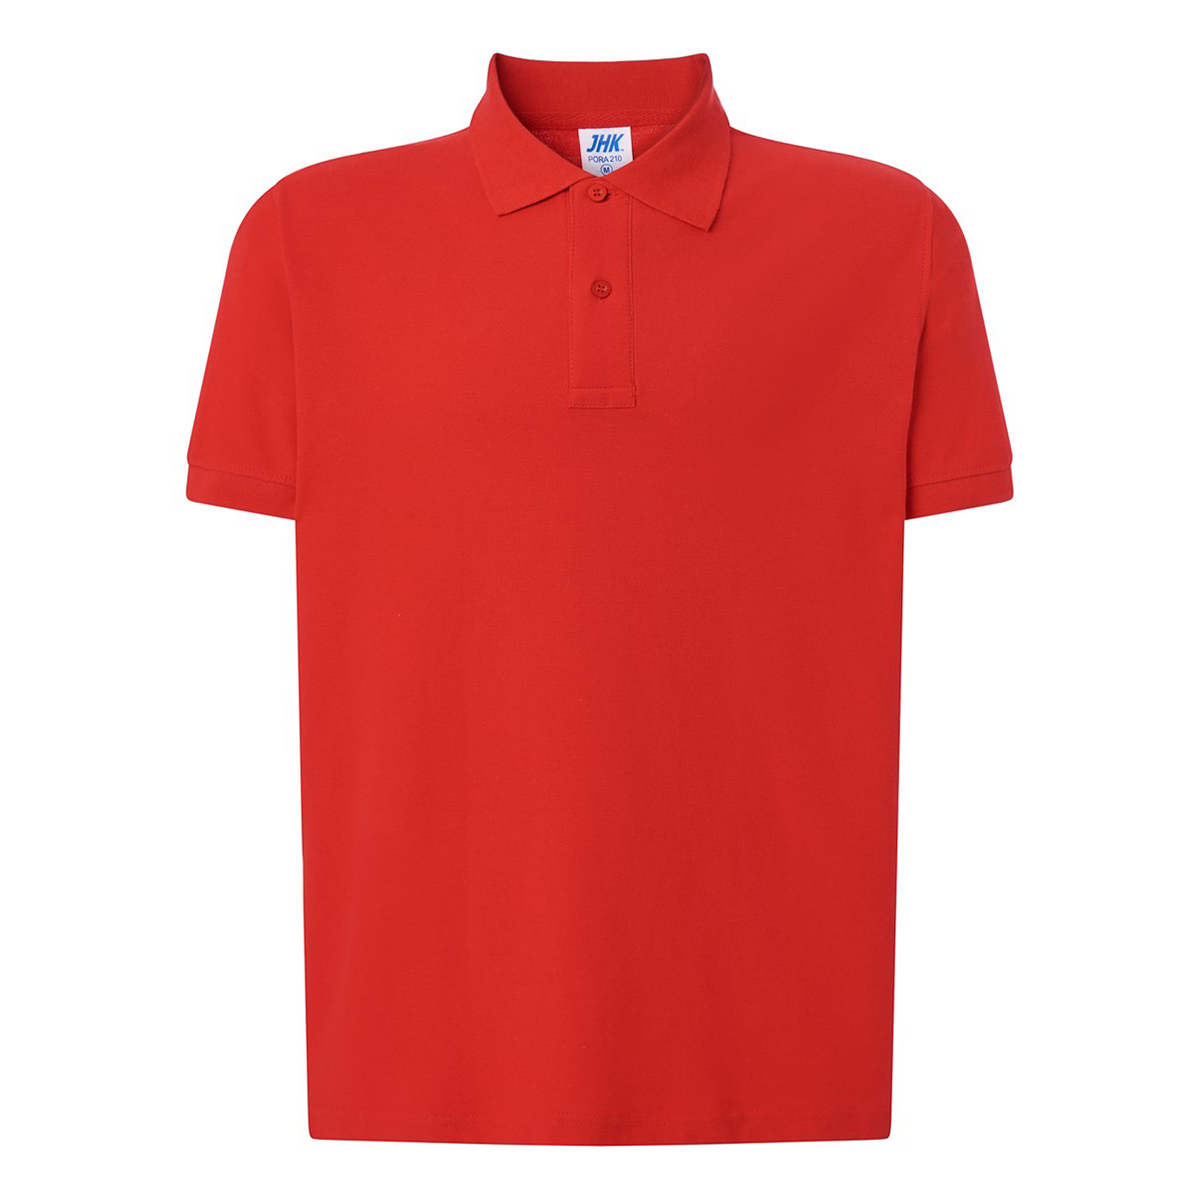 Koszulka polo WORKER męska z krótkim rękawem JHK czerwona